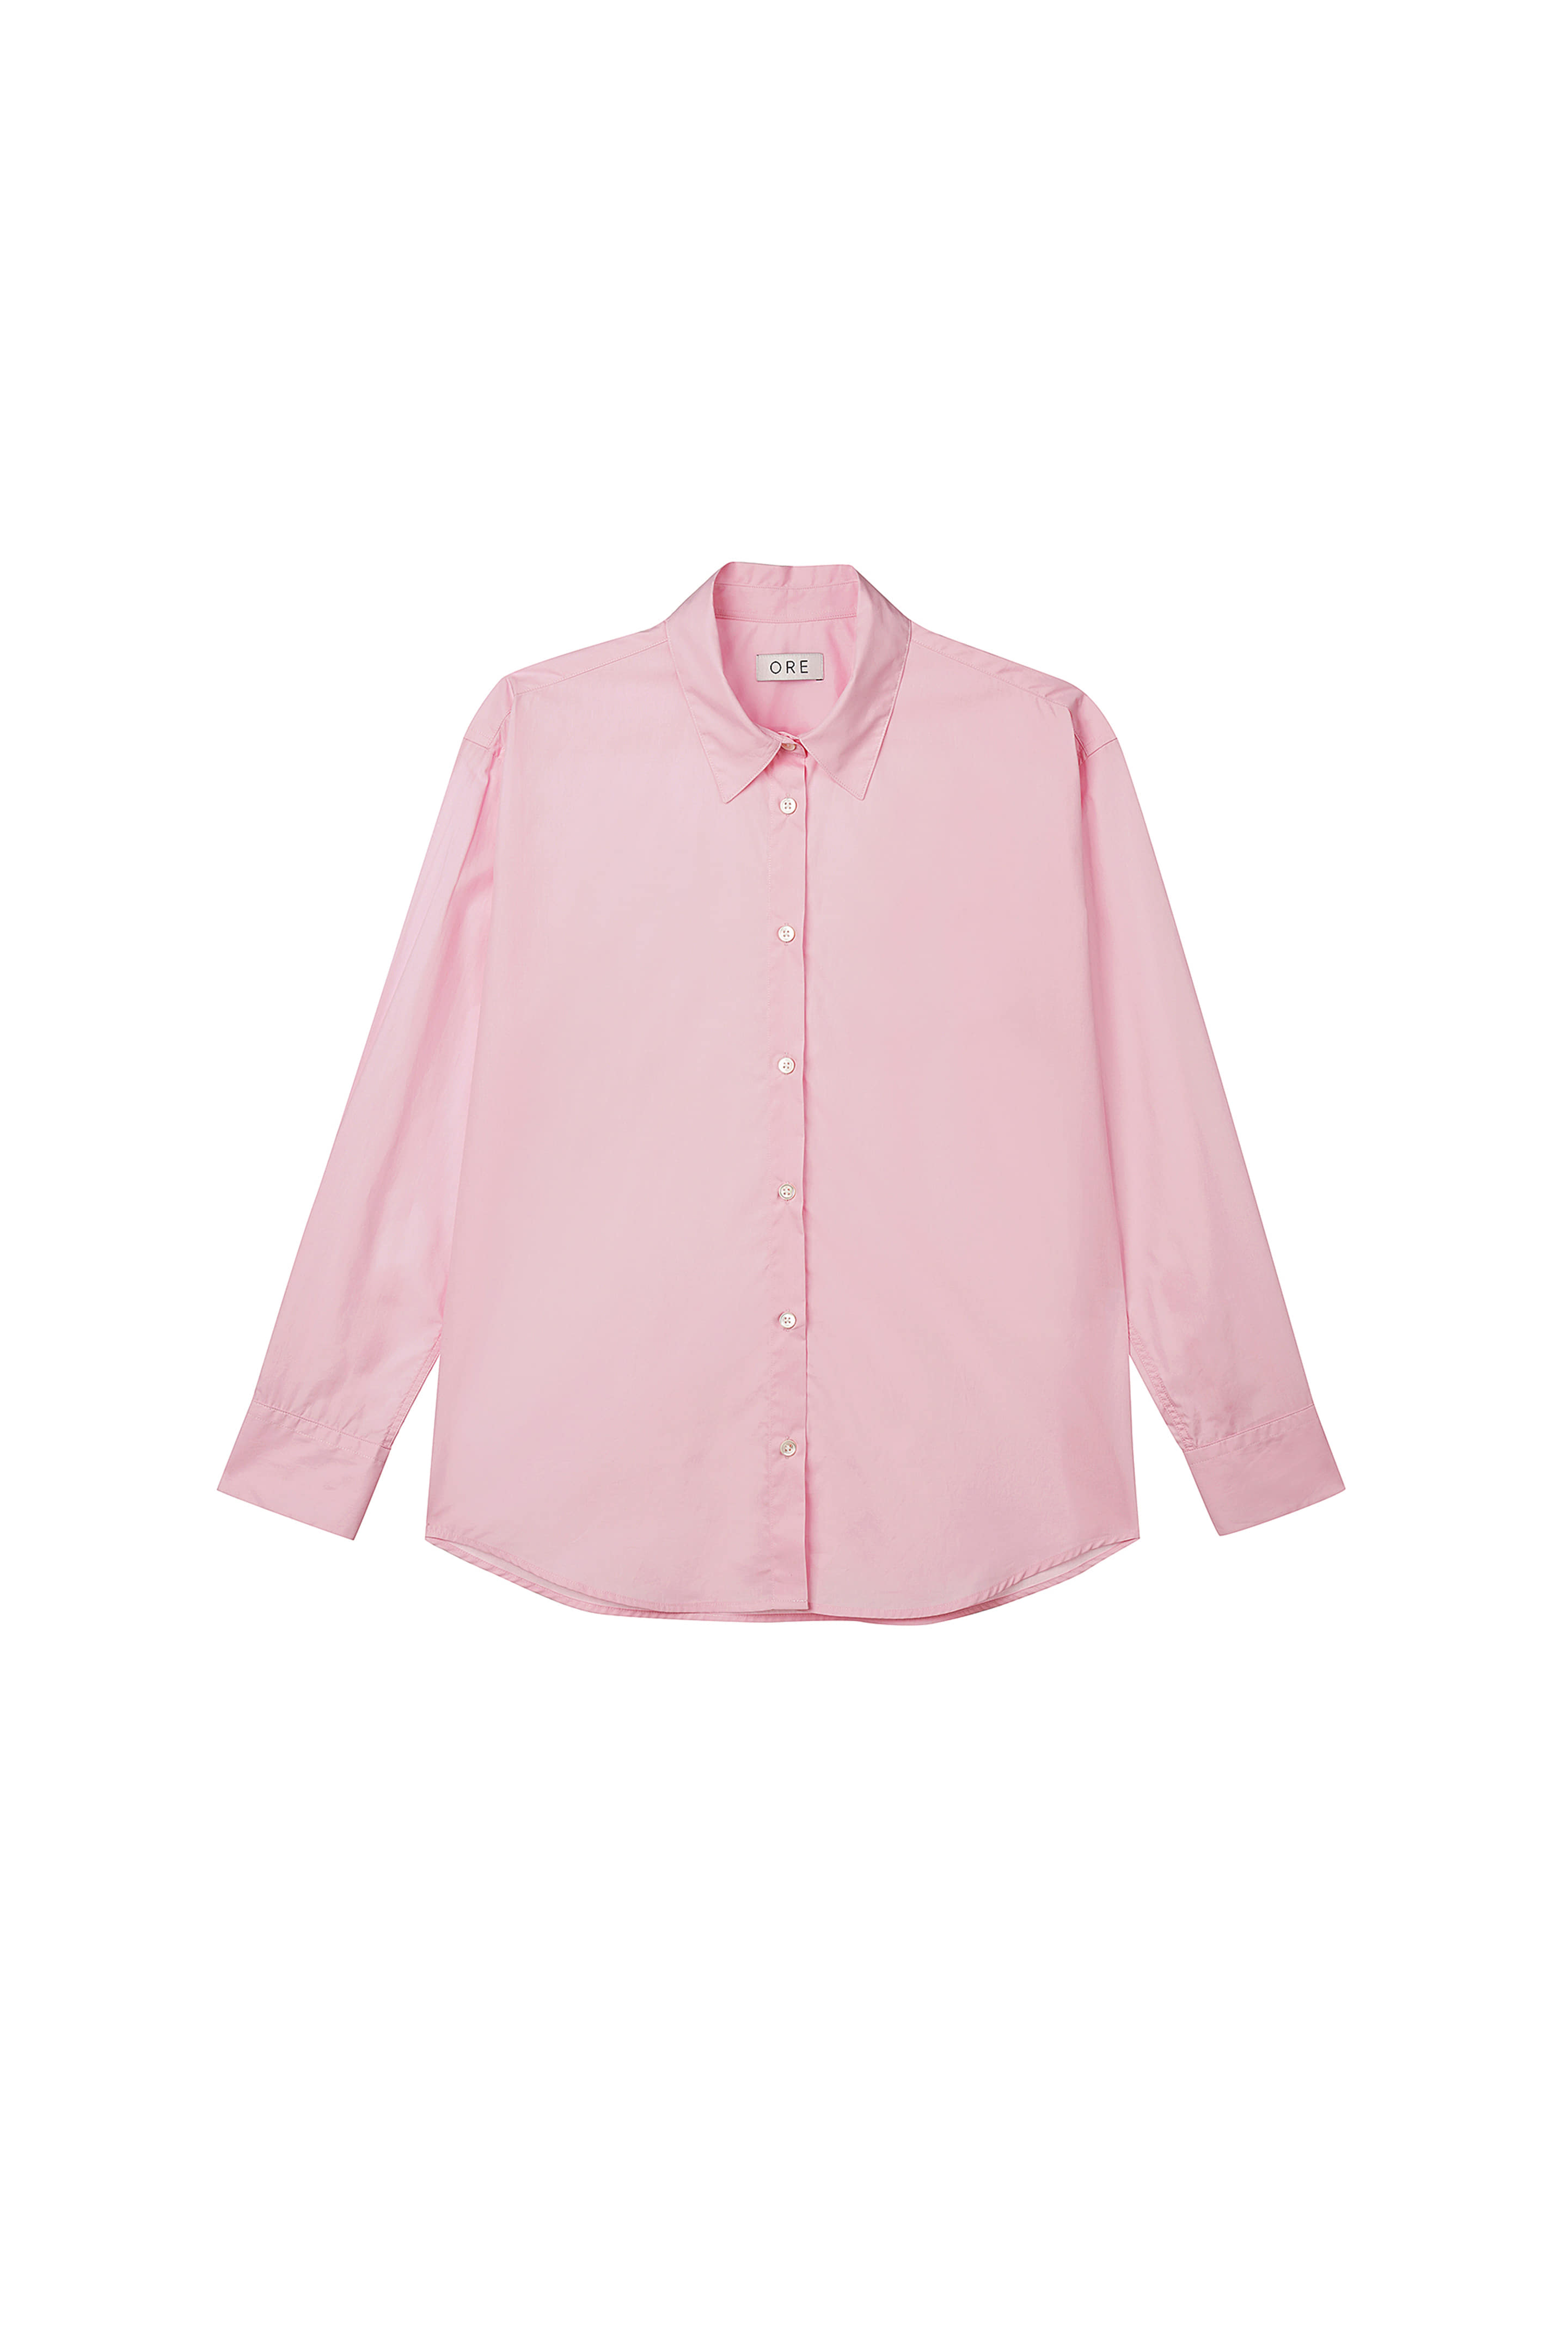 Shirts 70’ Cotton Soft Candy Pink